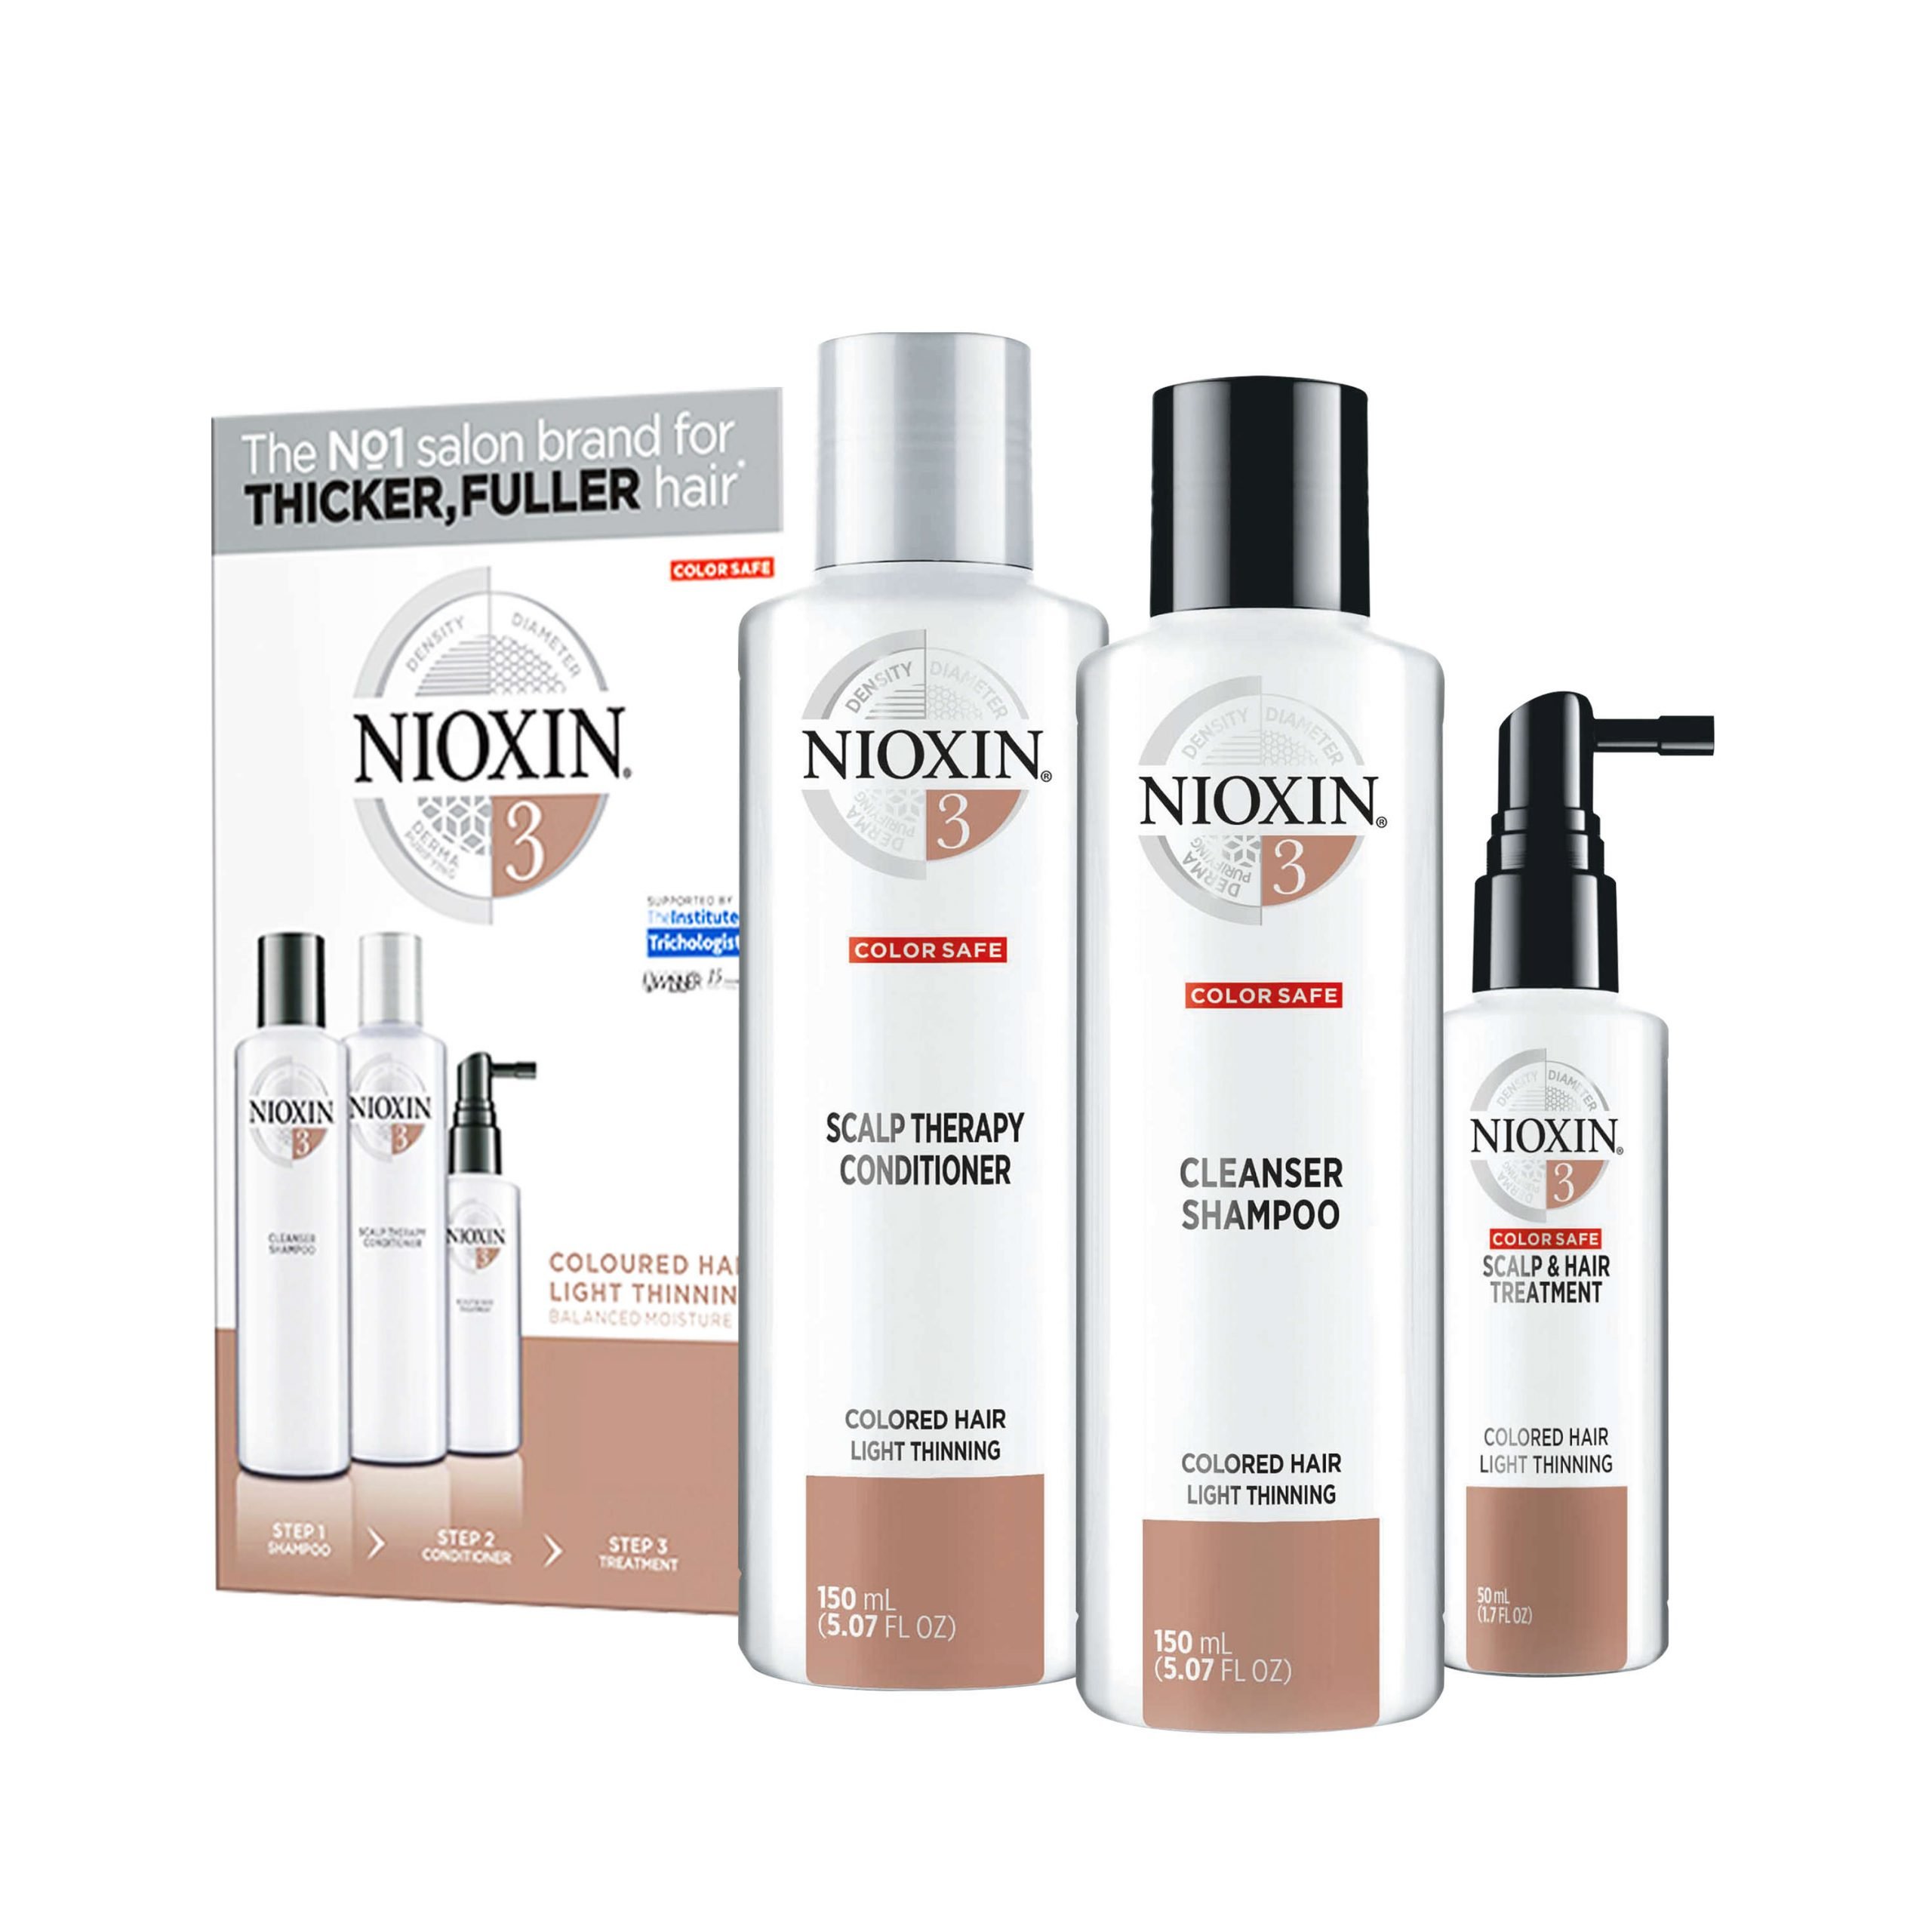 Nioxin Shampoo Reviews Hair Growth